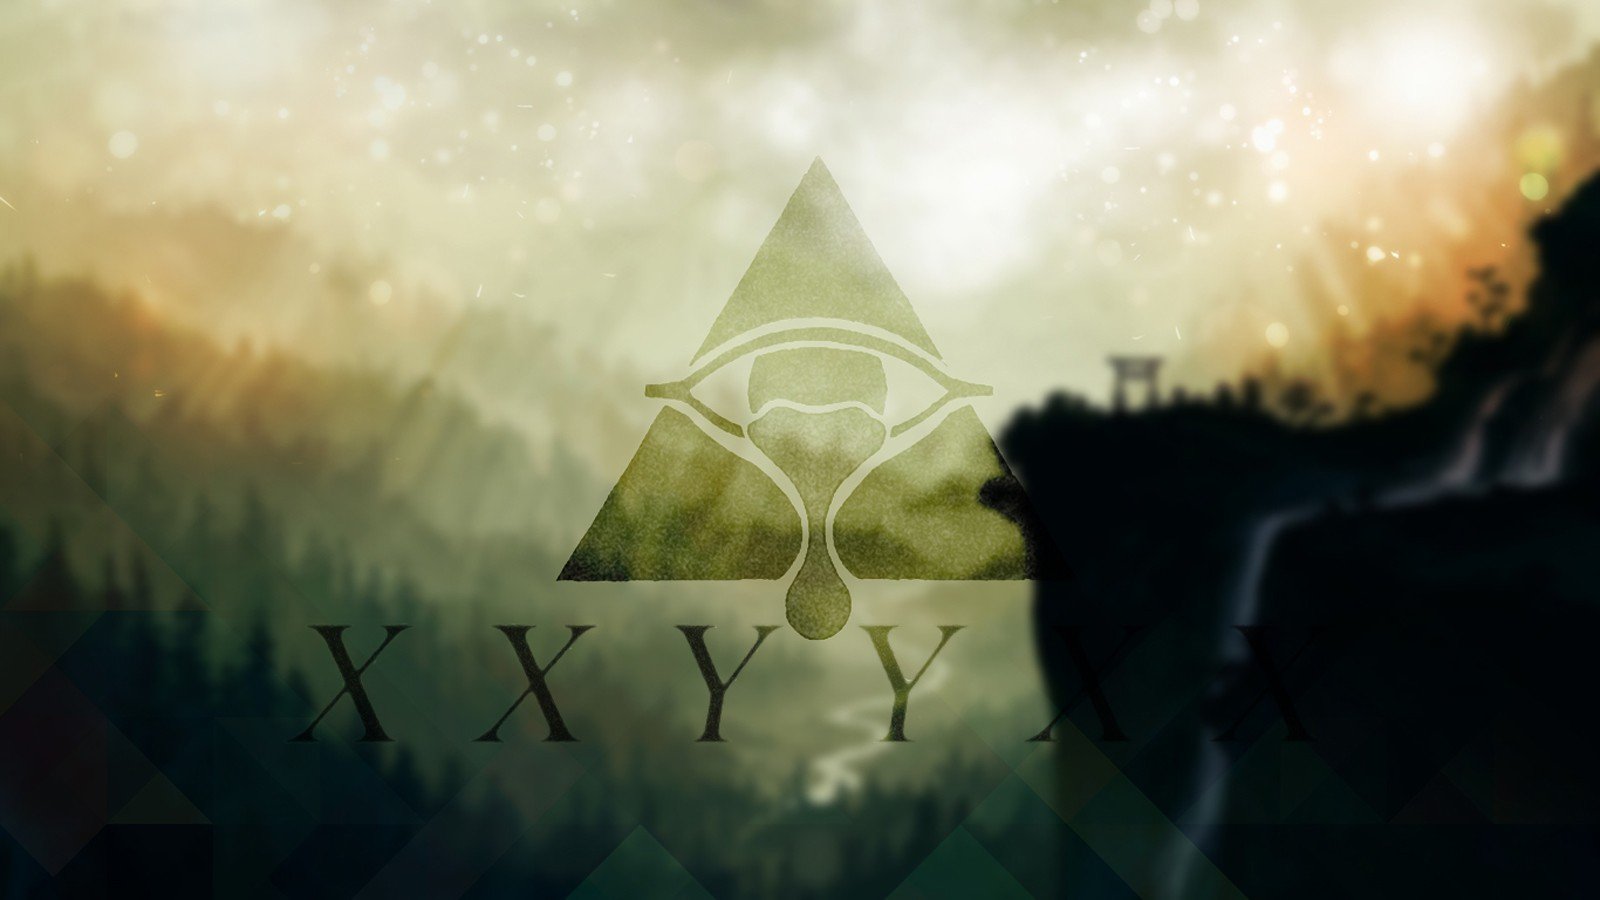 XXYYXX, Music Wallpaper